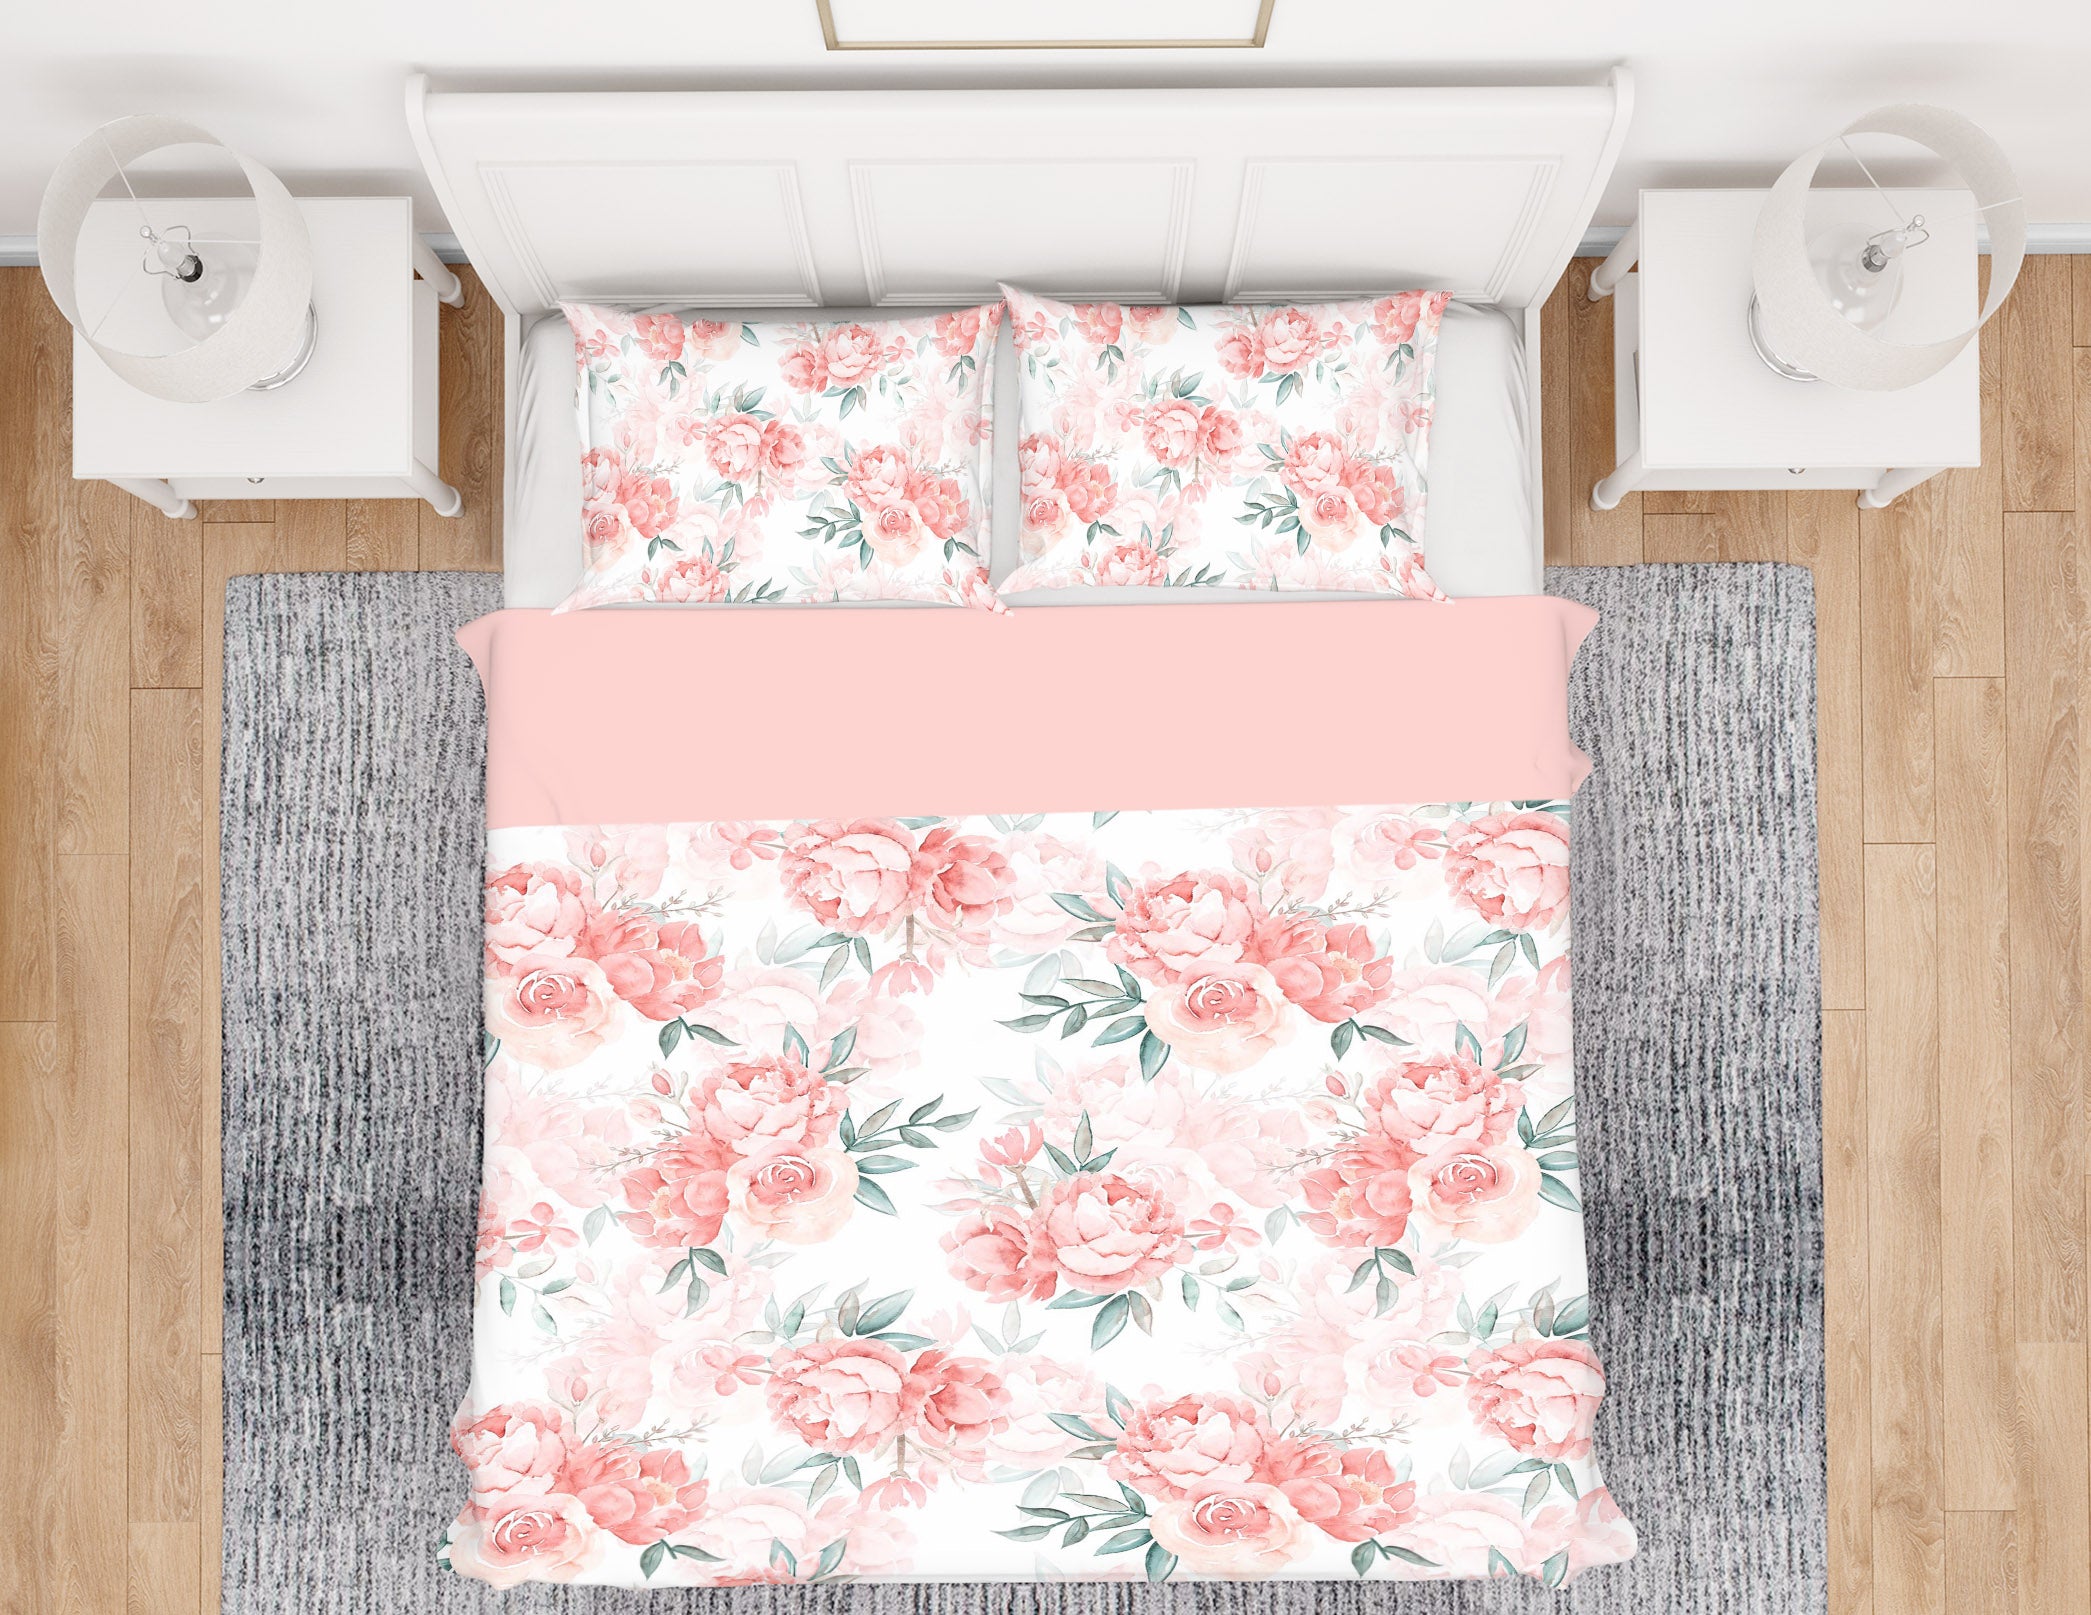 3D Flower 18198 Uta Naumann Bedding Bed Pillowcases Quilt